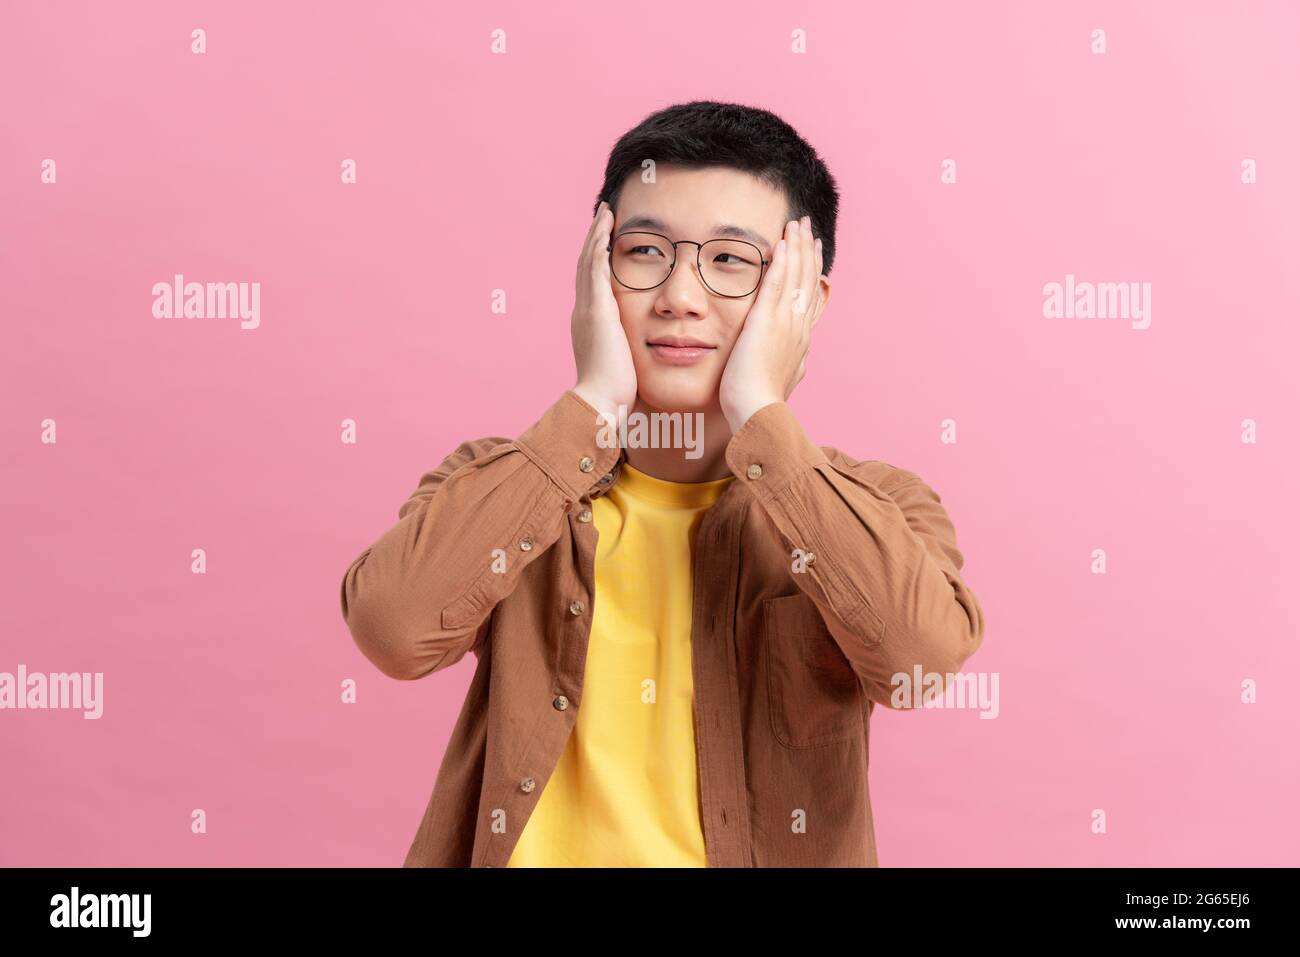 Beschämender lächelnder Mann, der sein Gesicht mit Händen bedeckt, die auf einem rosa Hintergrund isoliert sind Stockfoto